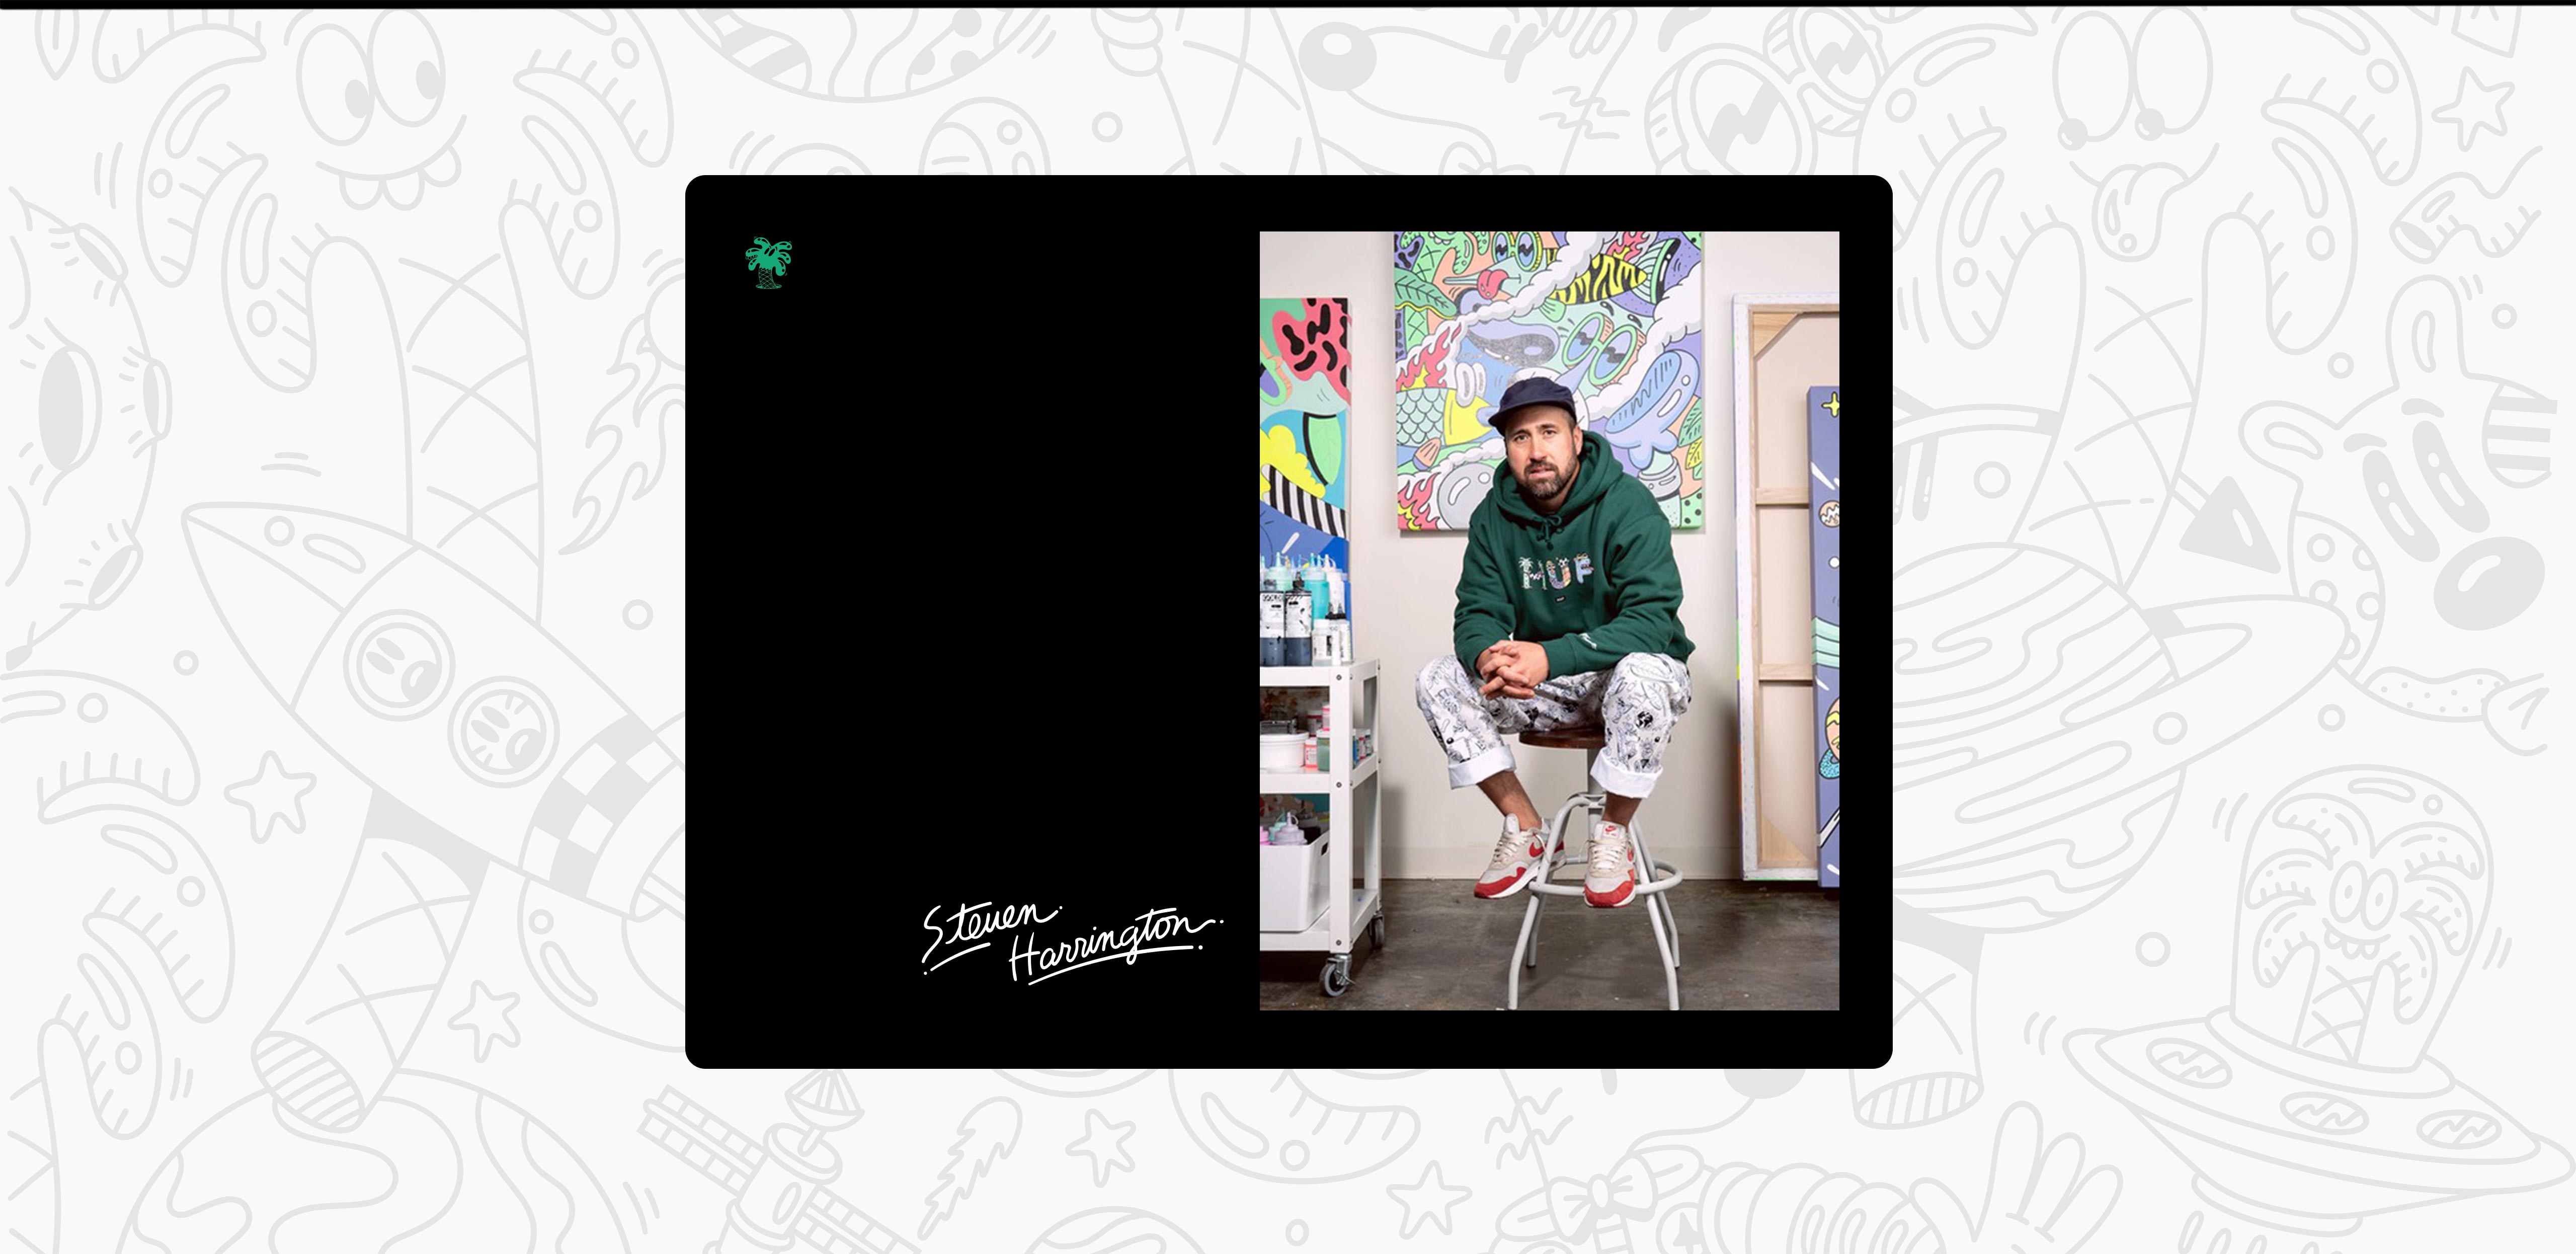 Steven Harrington afgebeeld in een groene hoodie. Hij zit op een kruk voor een van zijn kunstwerken.